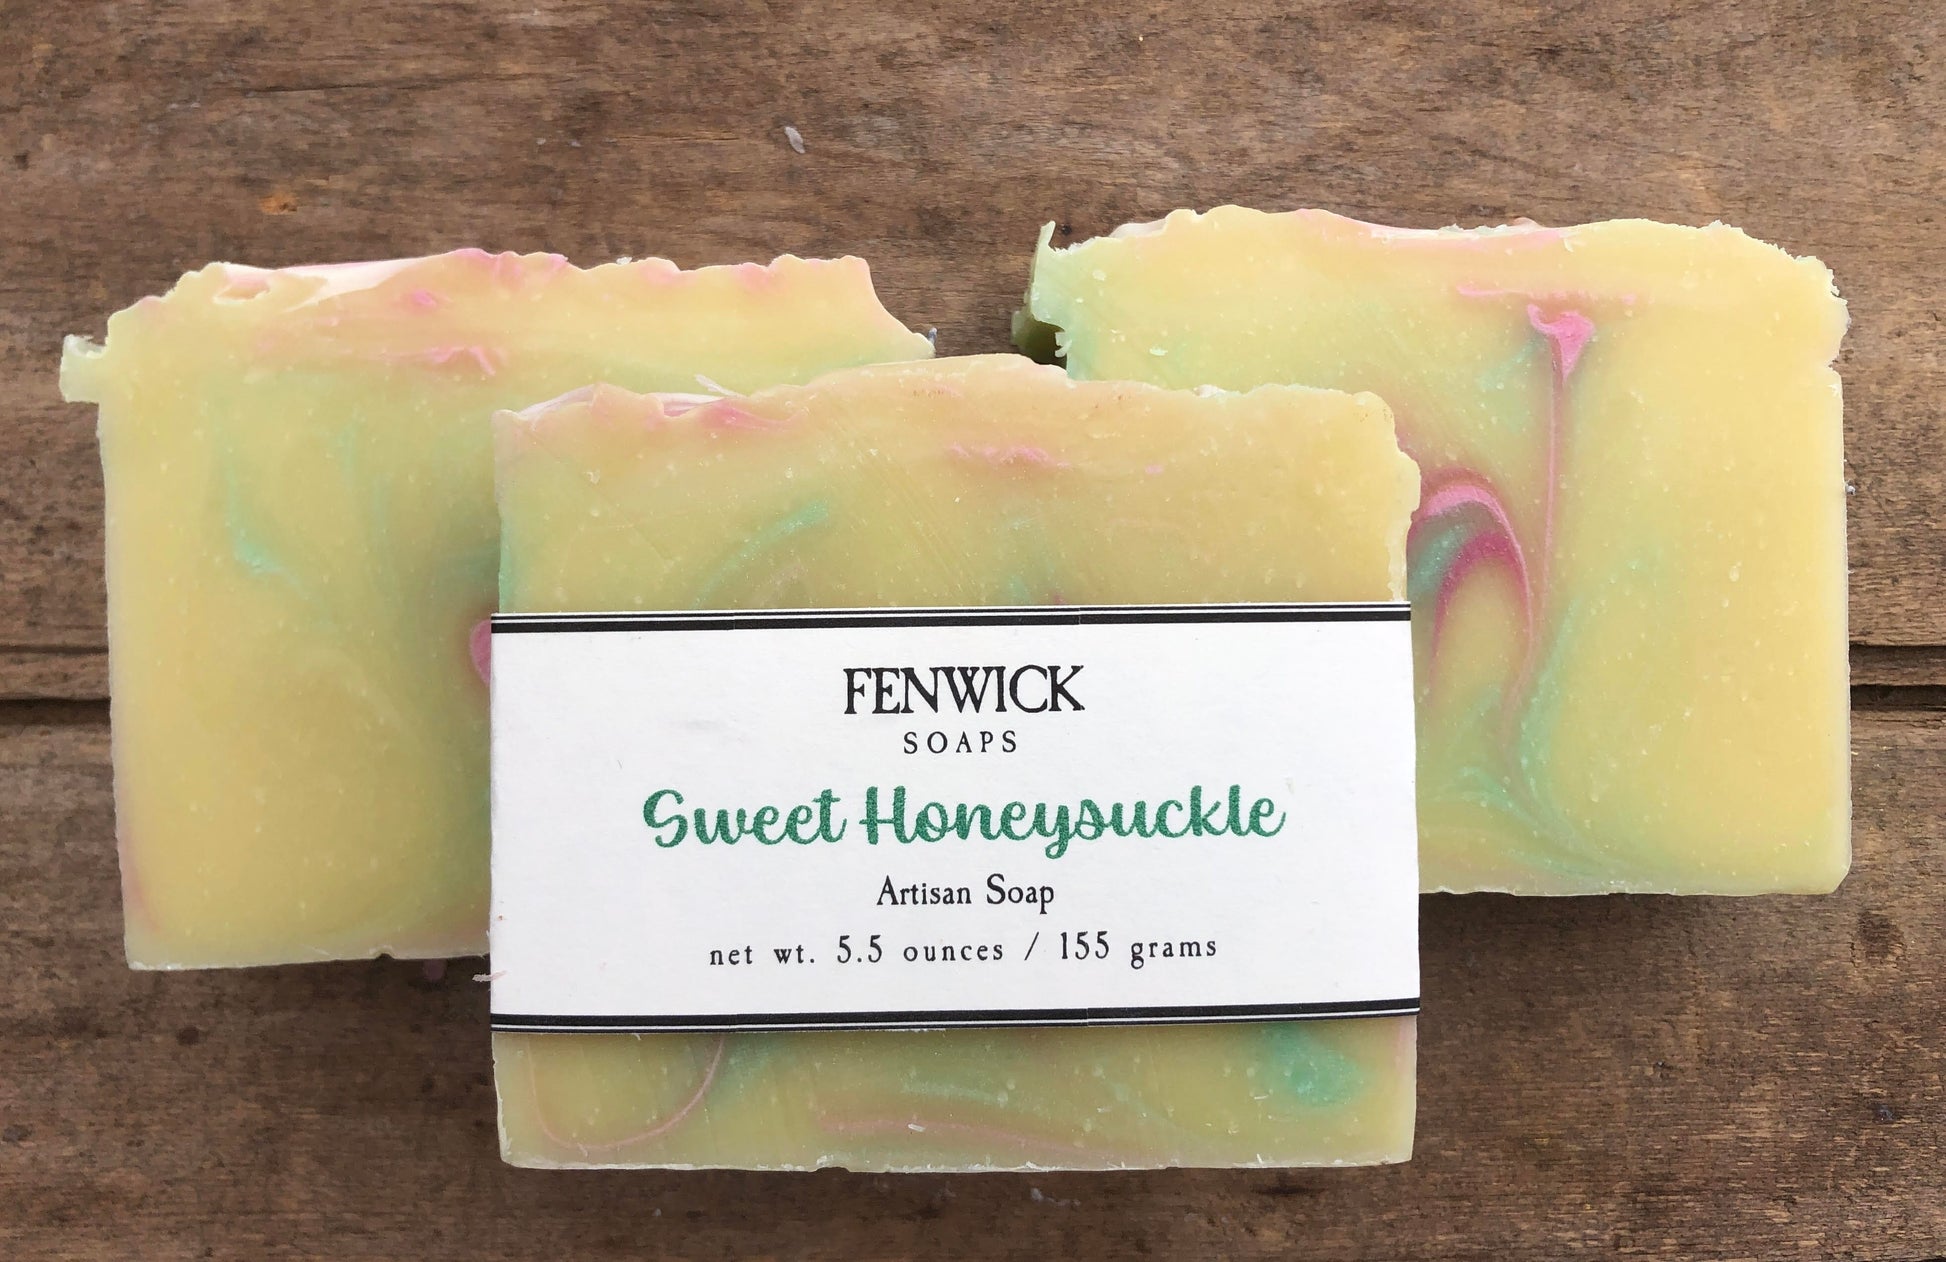 Fenwick Soap - Sweet Honeysuckle - Five and Divine